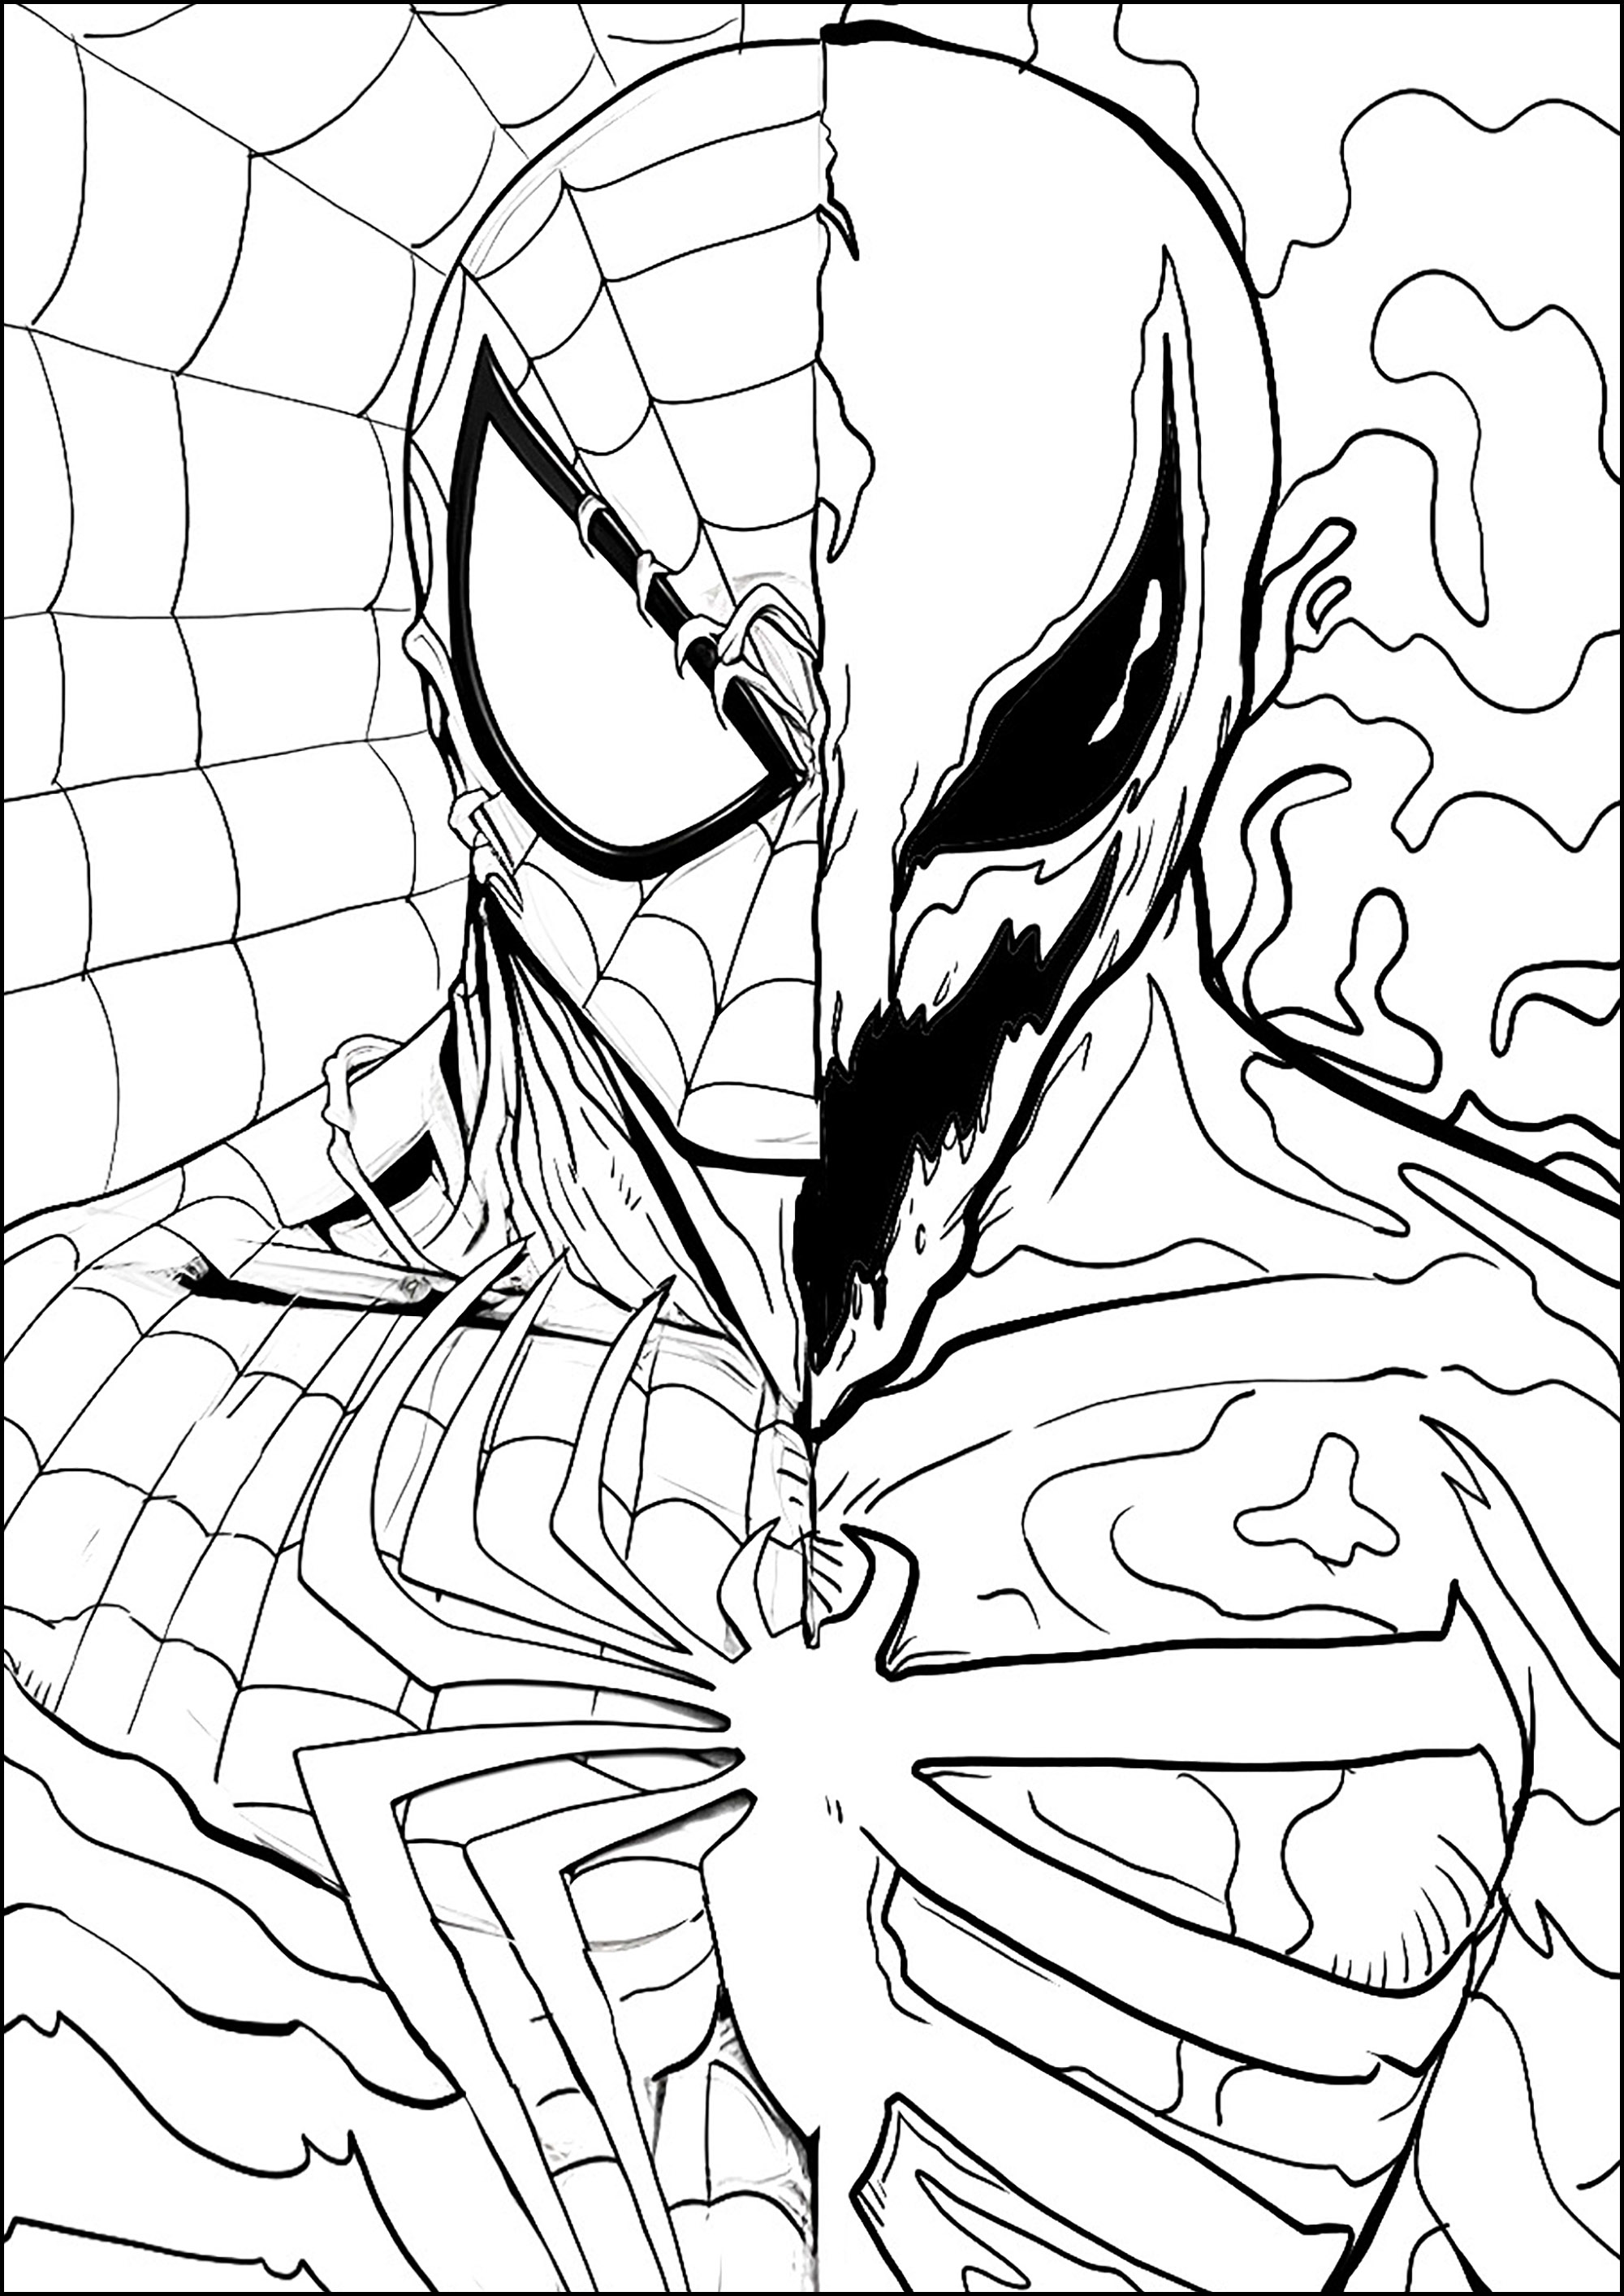 Banda desenhada do Homem-Aranha e do Venom